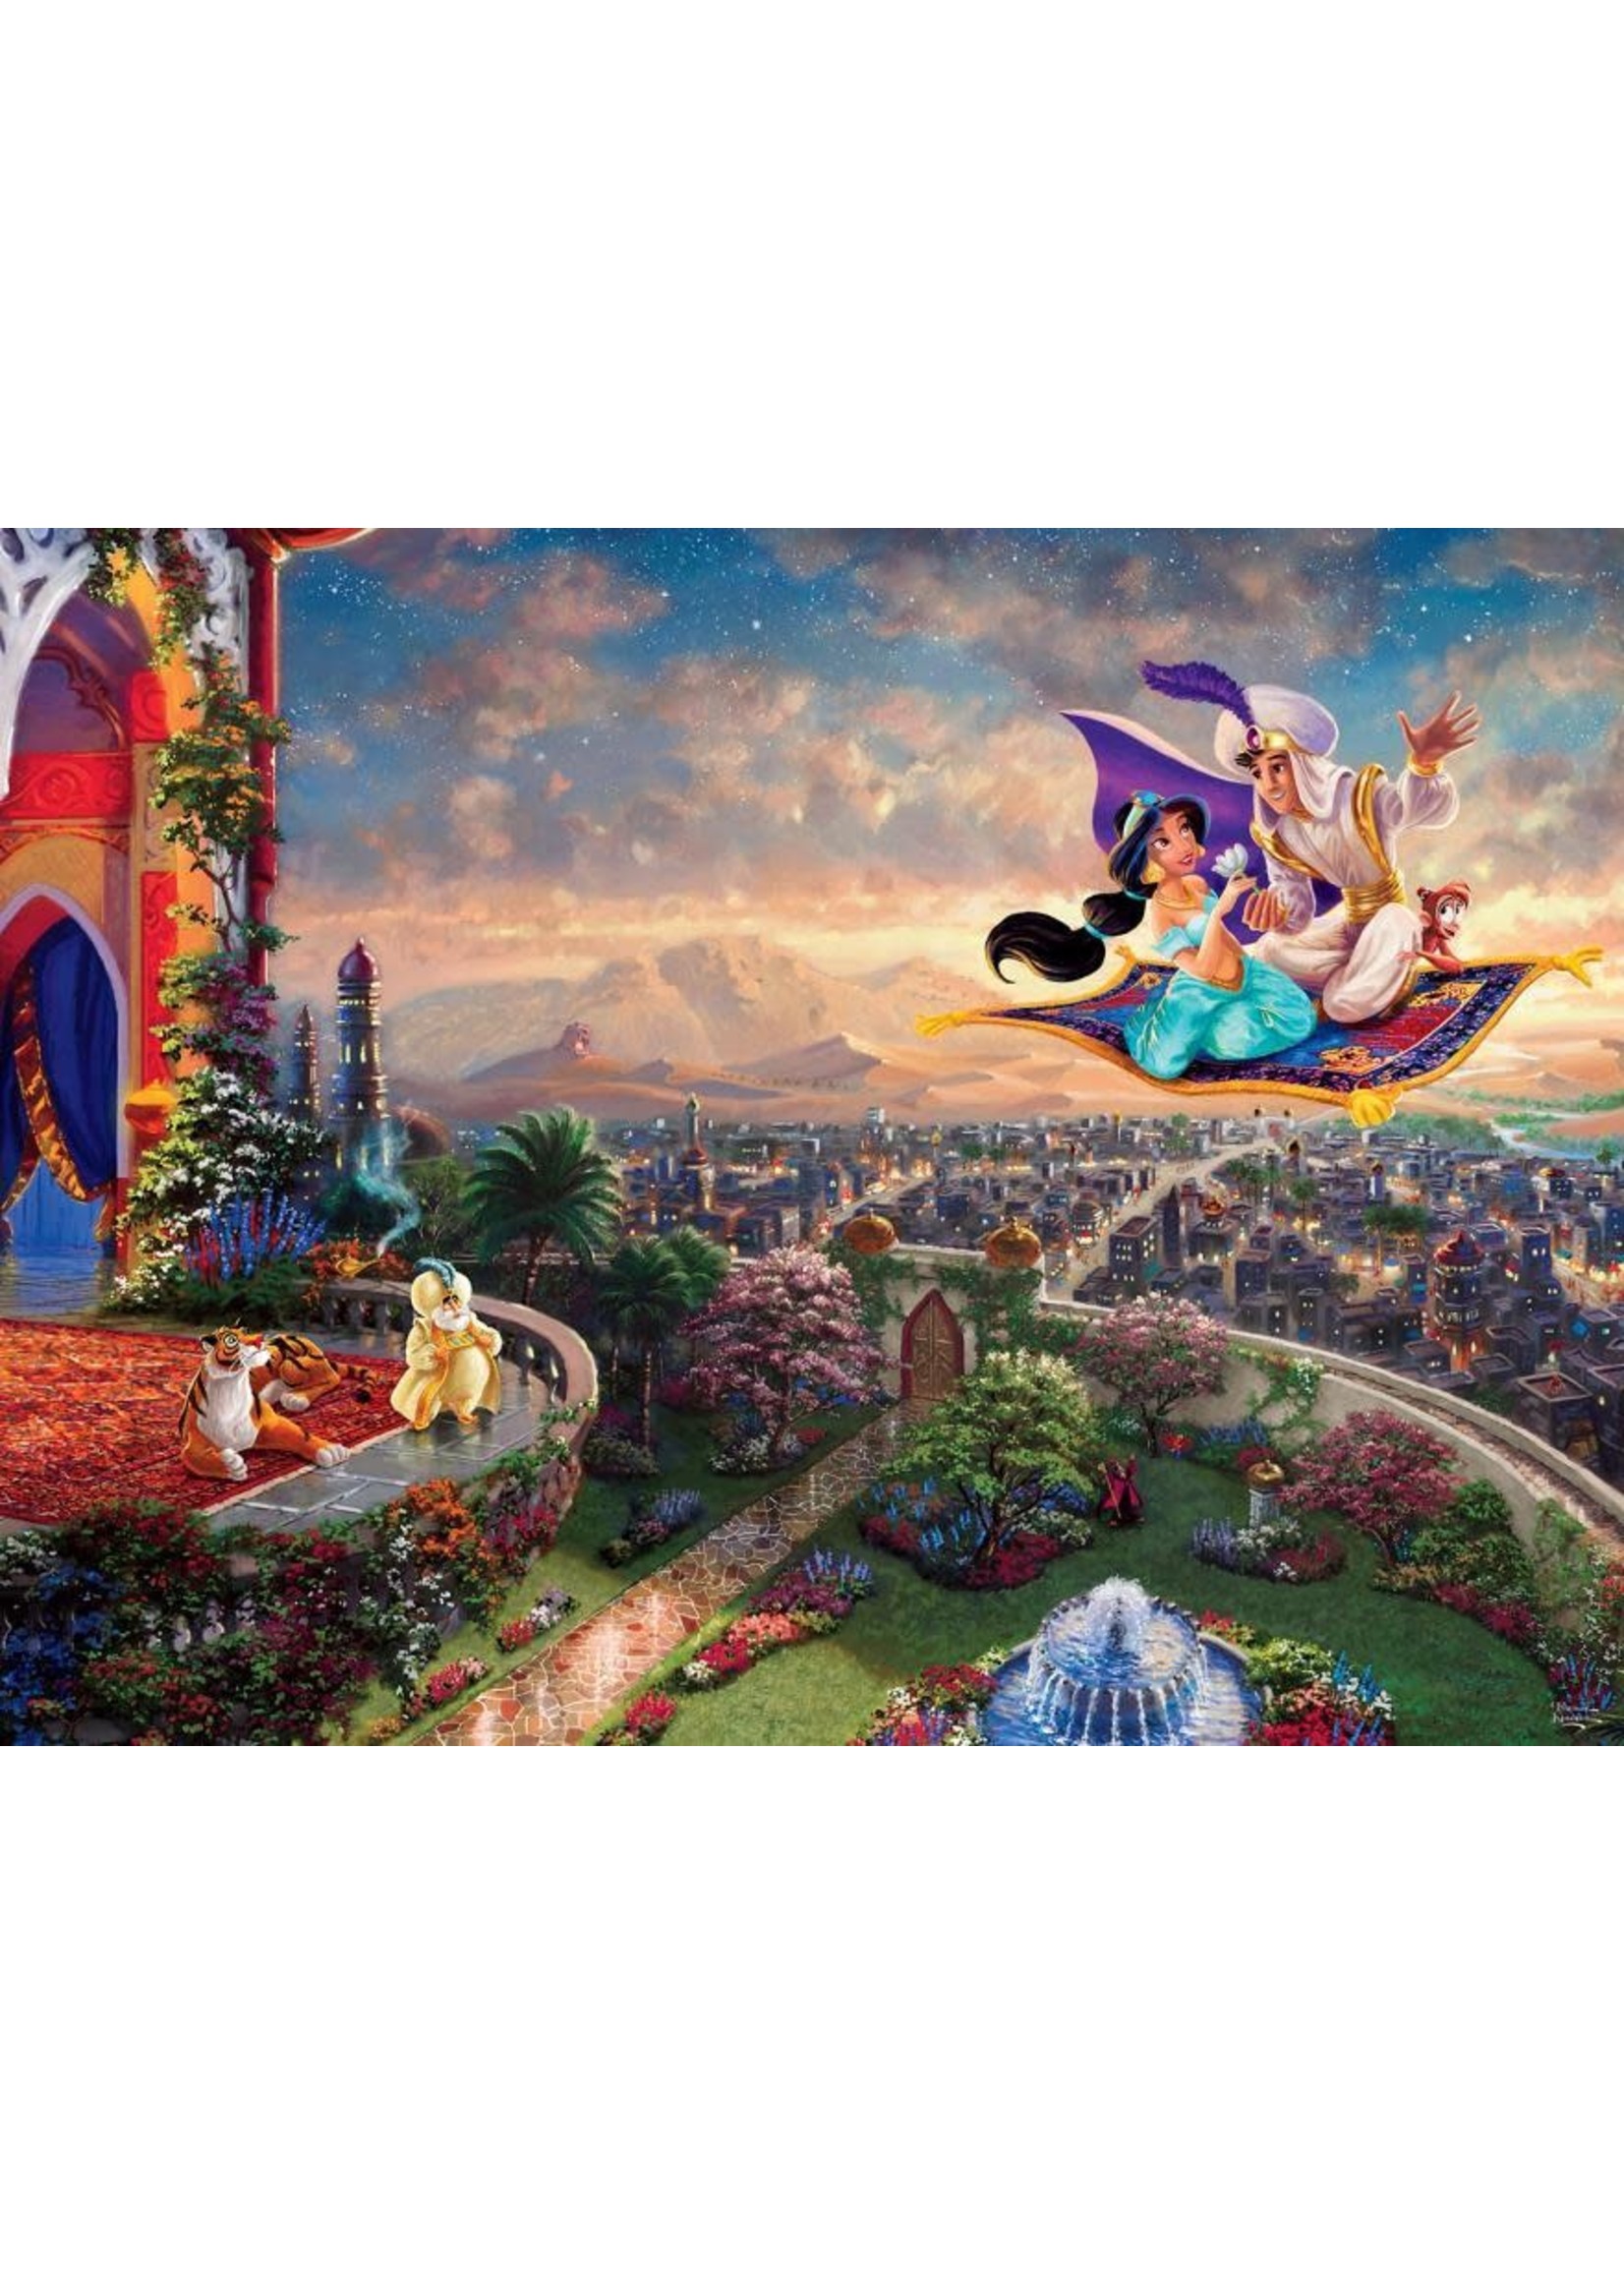 Ceaco "Aladdin" 750 Piece Puzzle